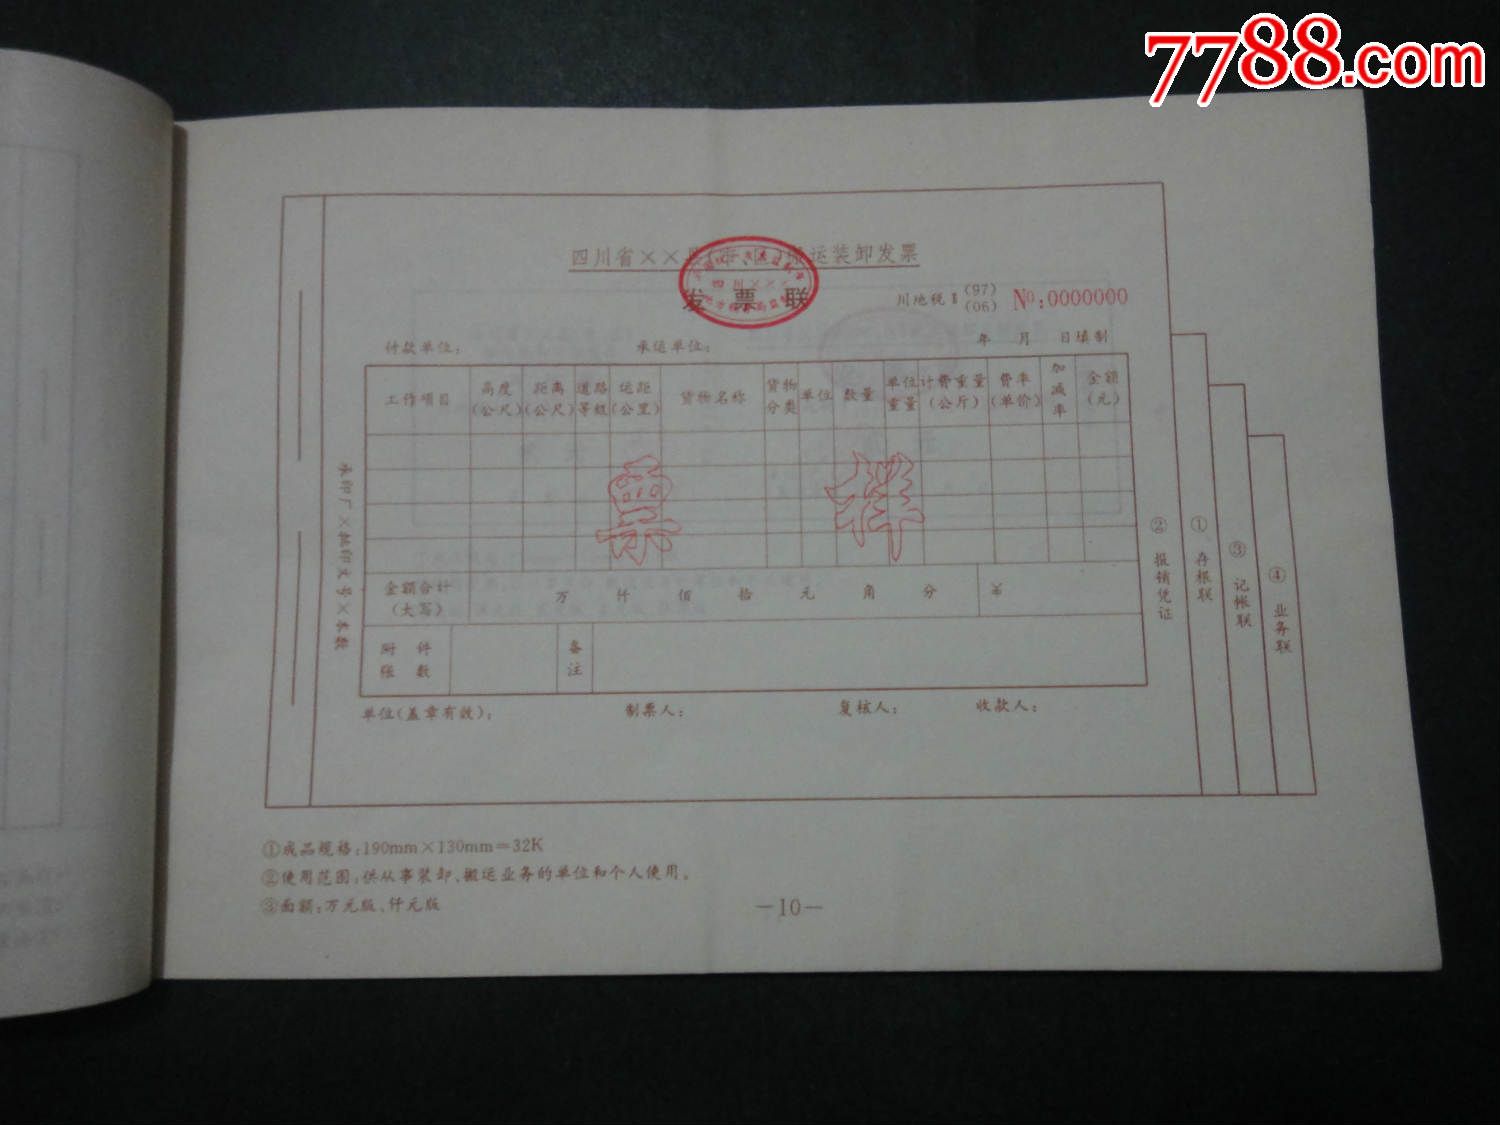 1996年四川省地方税收发票样本(16开)图片